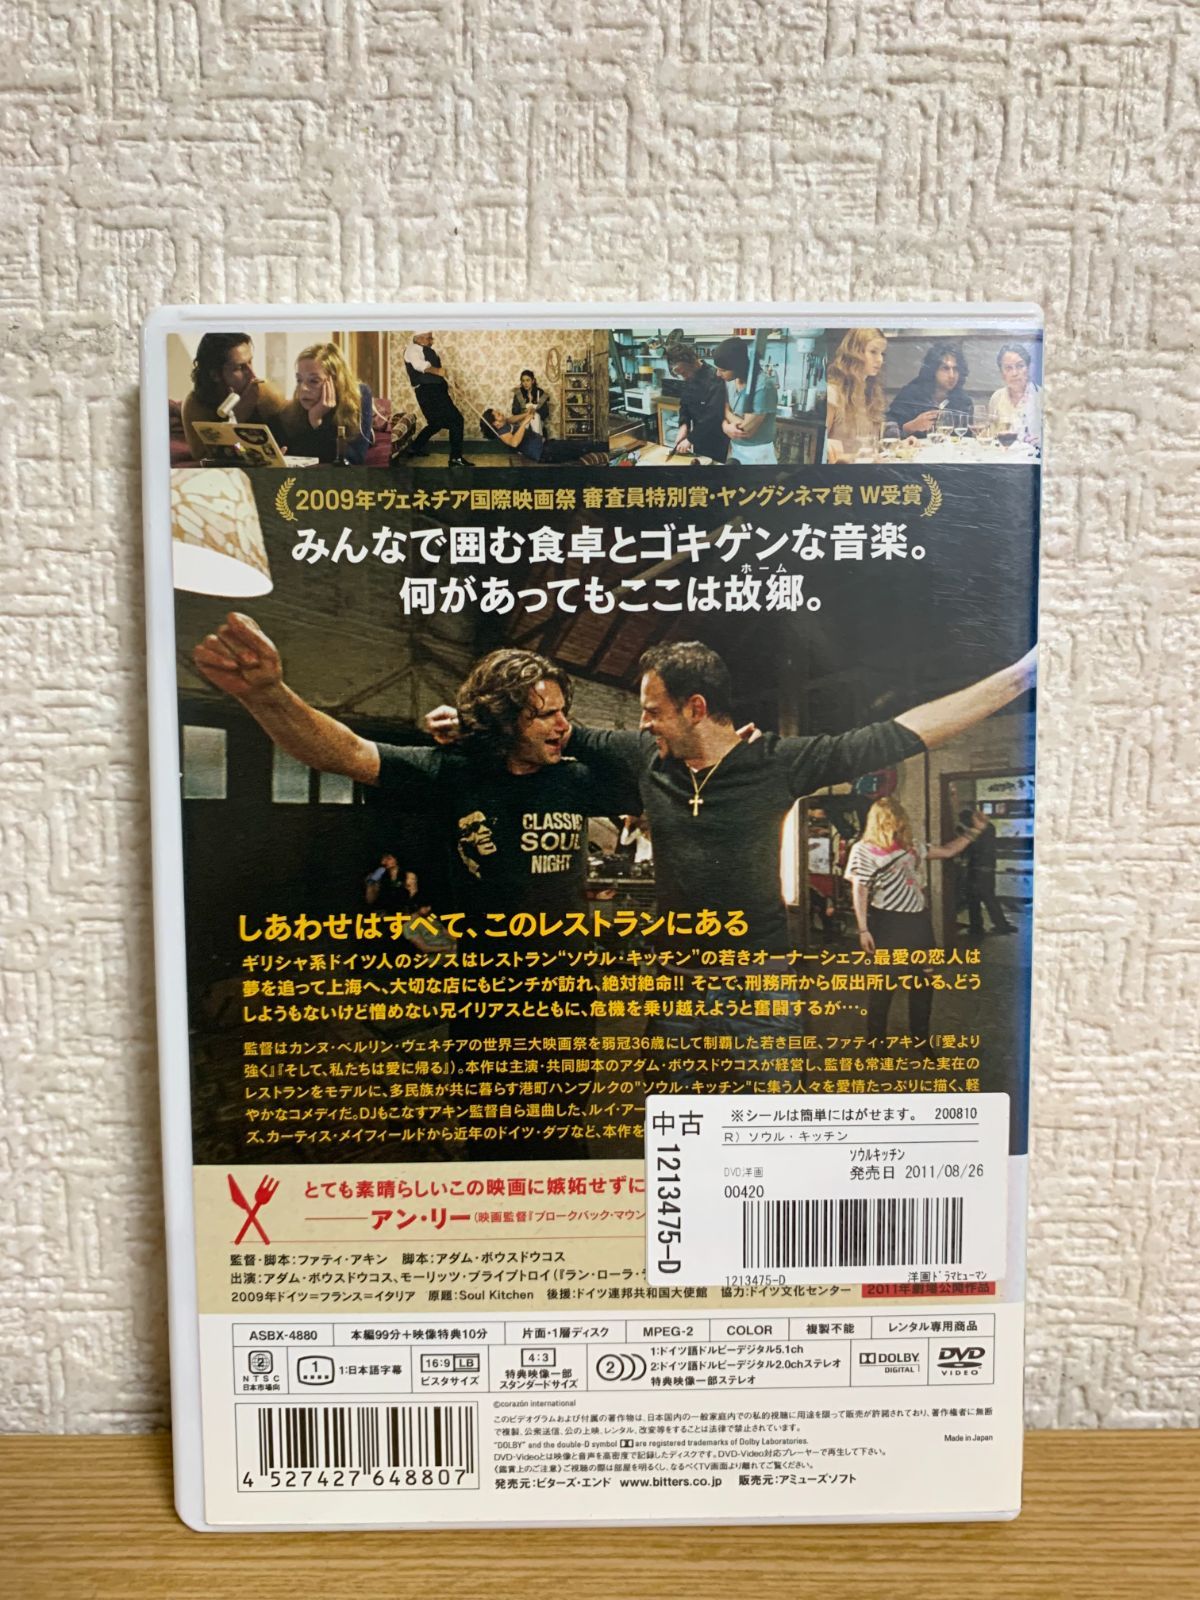 ソウル・キッチン DVD - ☆新世界ストア☆ メルカリ店 - メルカリ